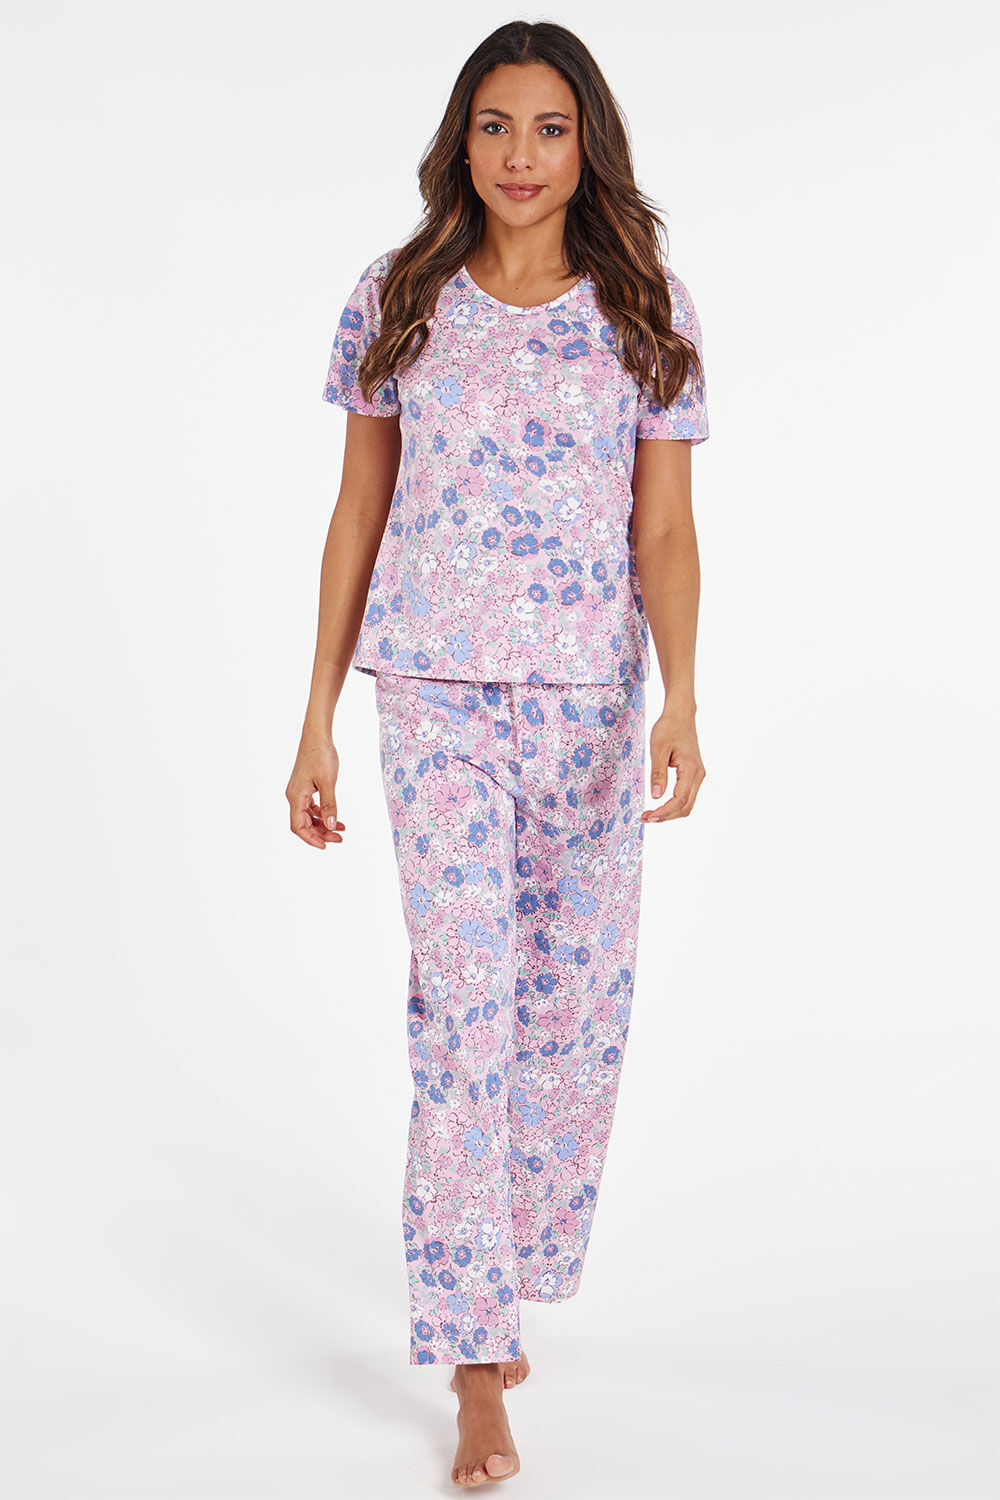 Bonmarche Pink Short Sleeve All Over Floral Print Pyjama Set, Size: 16-18